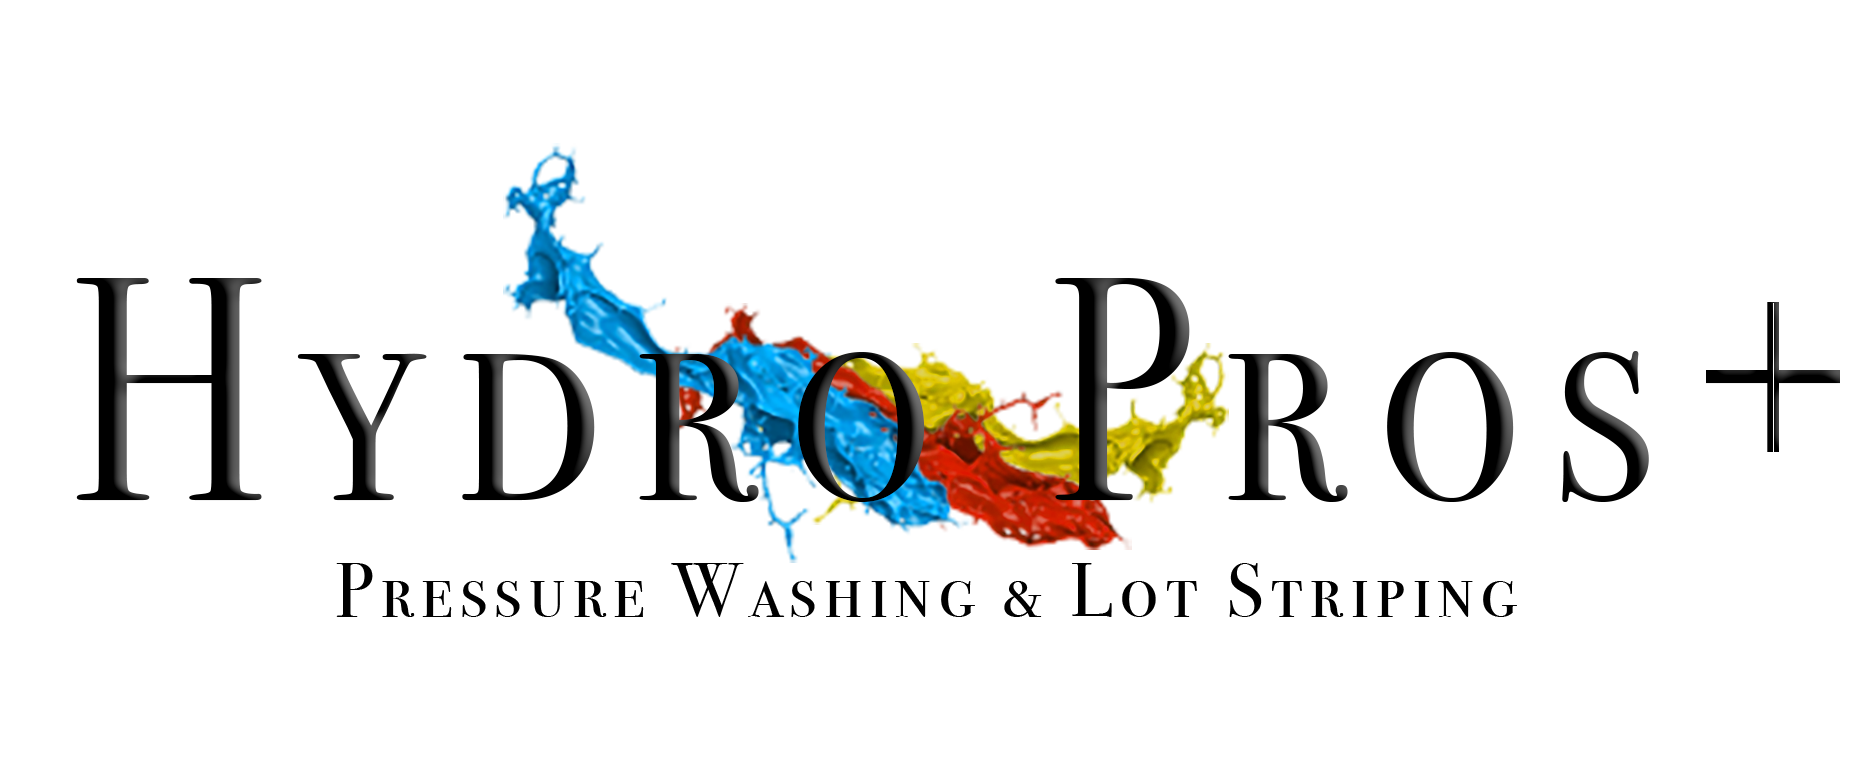 Hydro Pros + Logo